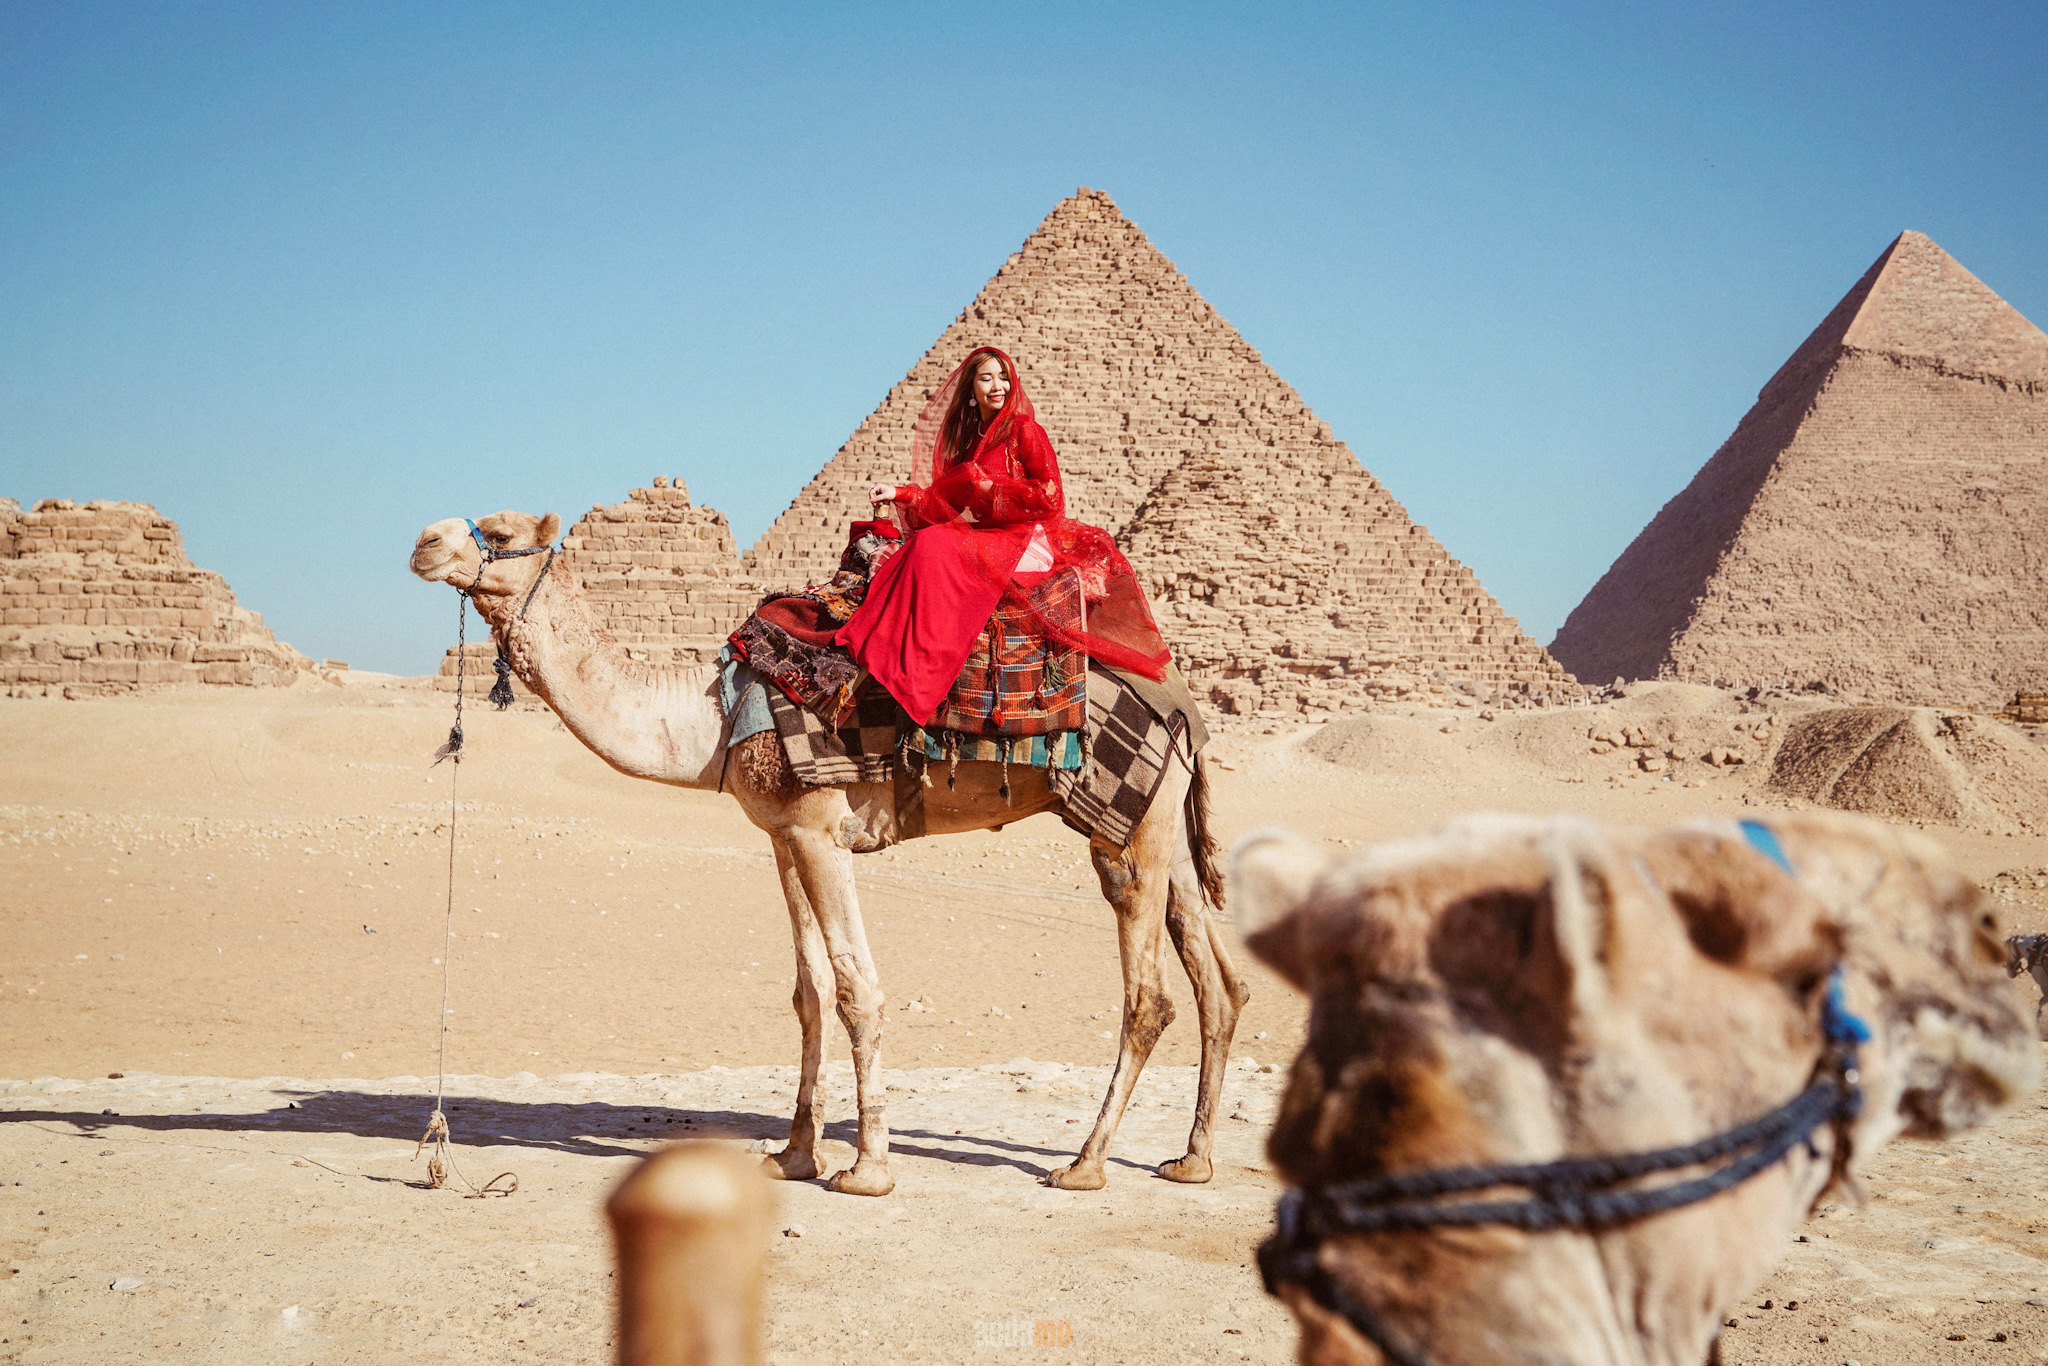 Du Lịch Tết Ai Cập, Tour Ai Cập 12 ngày, Tour du lịch Ai Cập Tết 12 ngày, Lịch tour Ai Cập đón Tết